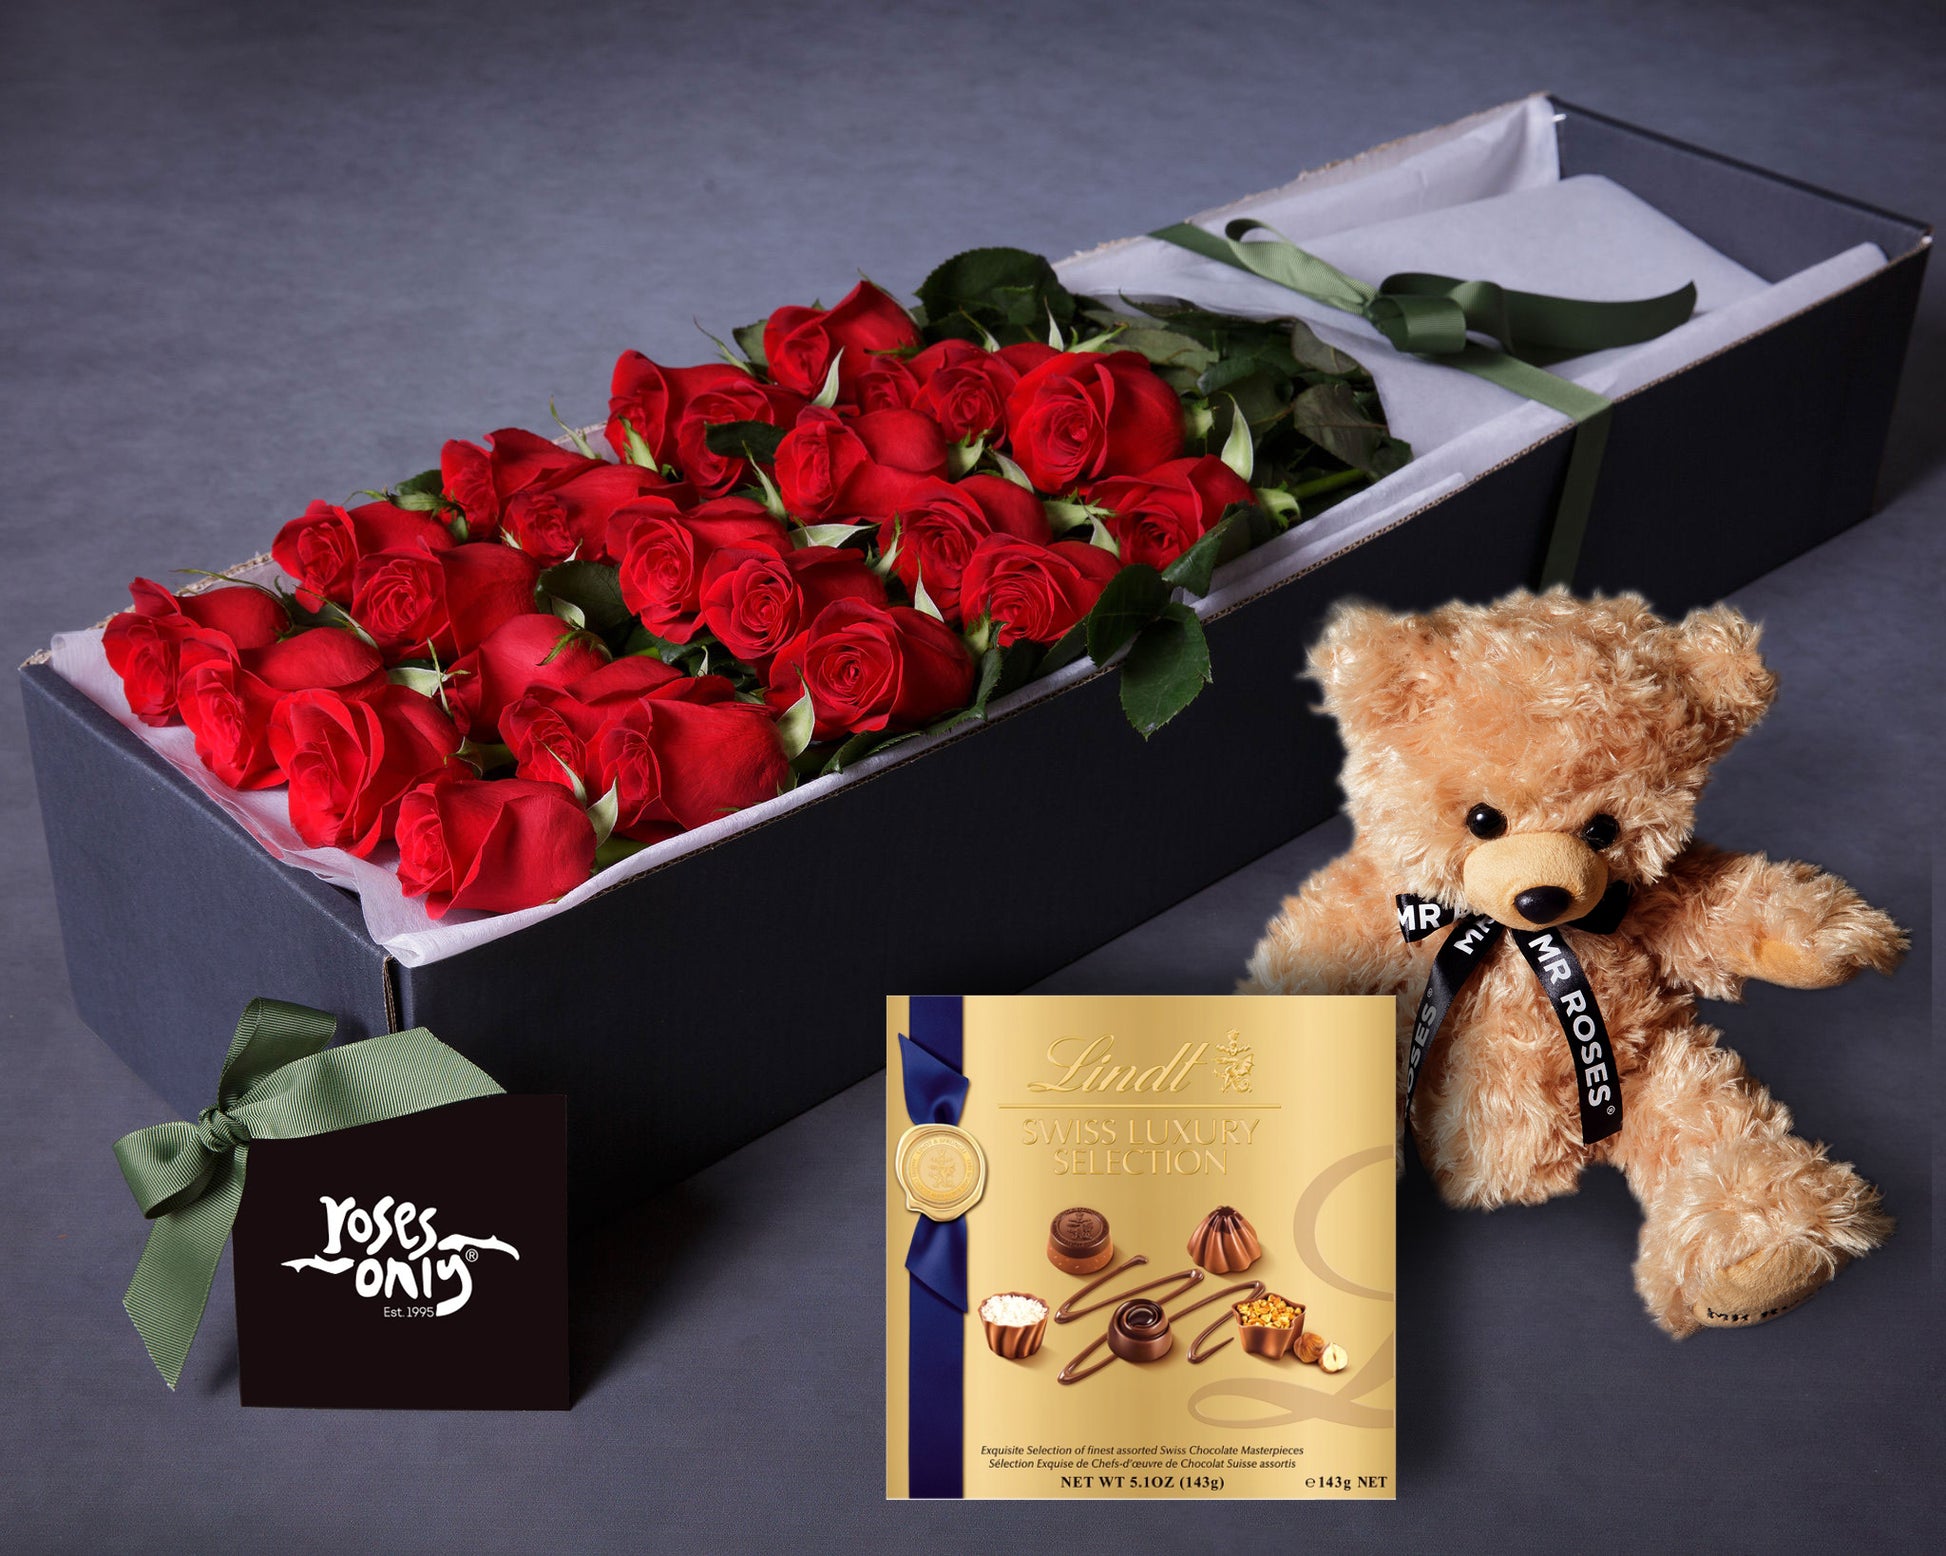 Box roses et chocolats